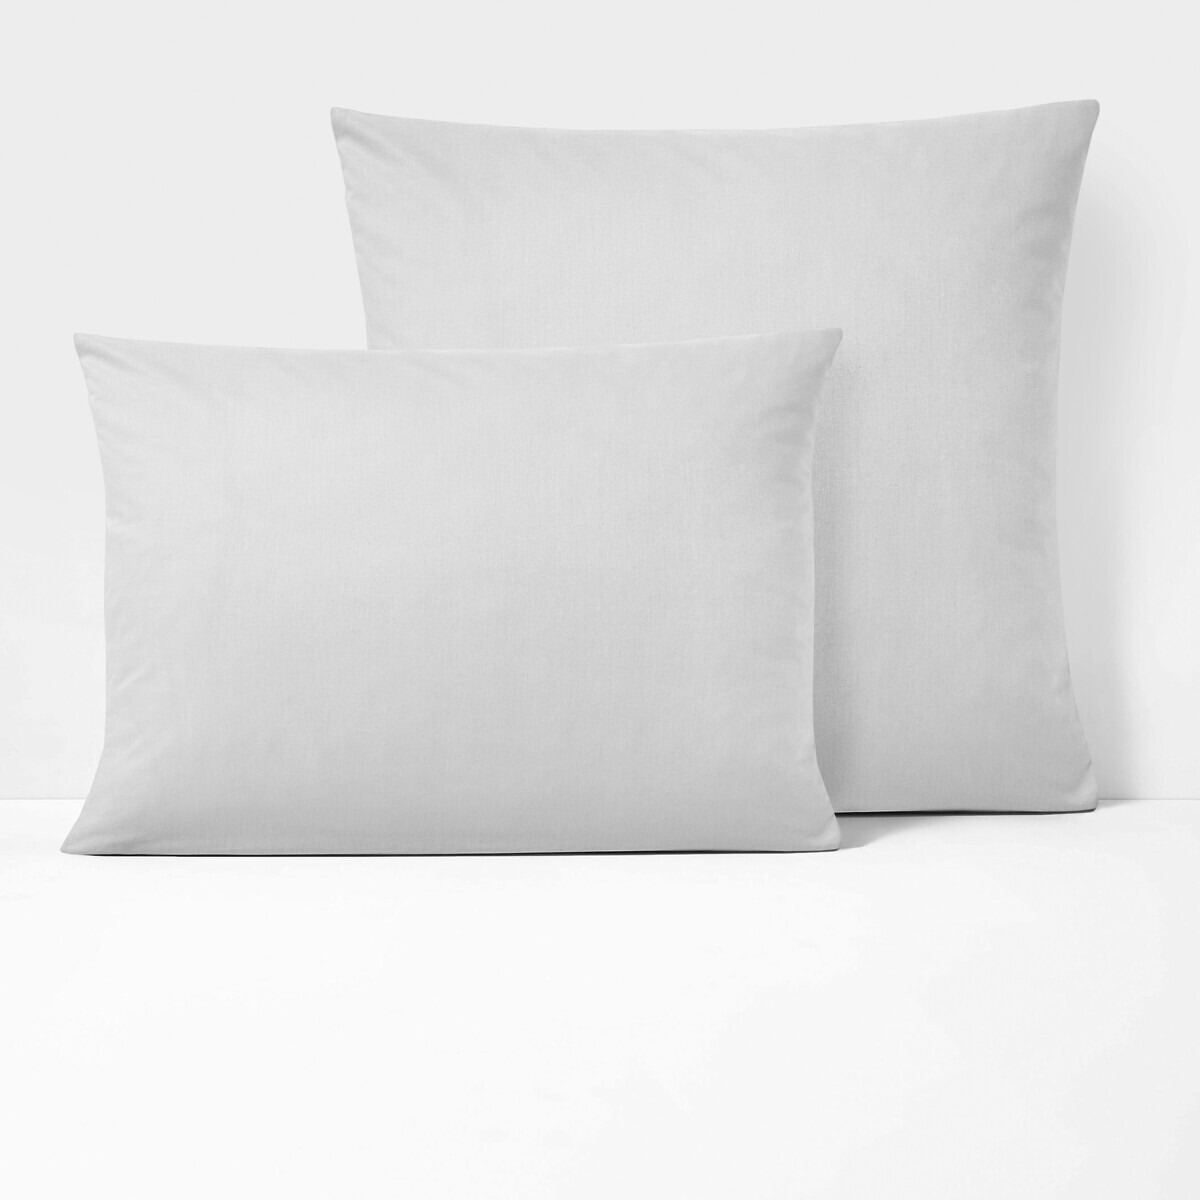 Scenario Plain Polycotton Pillowcase - image 1